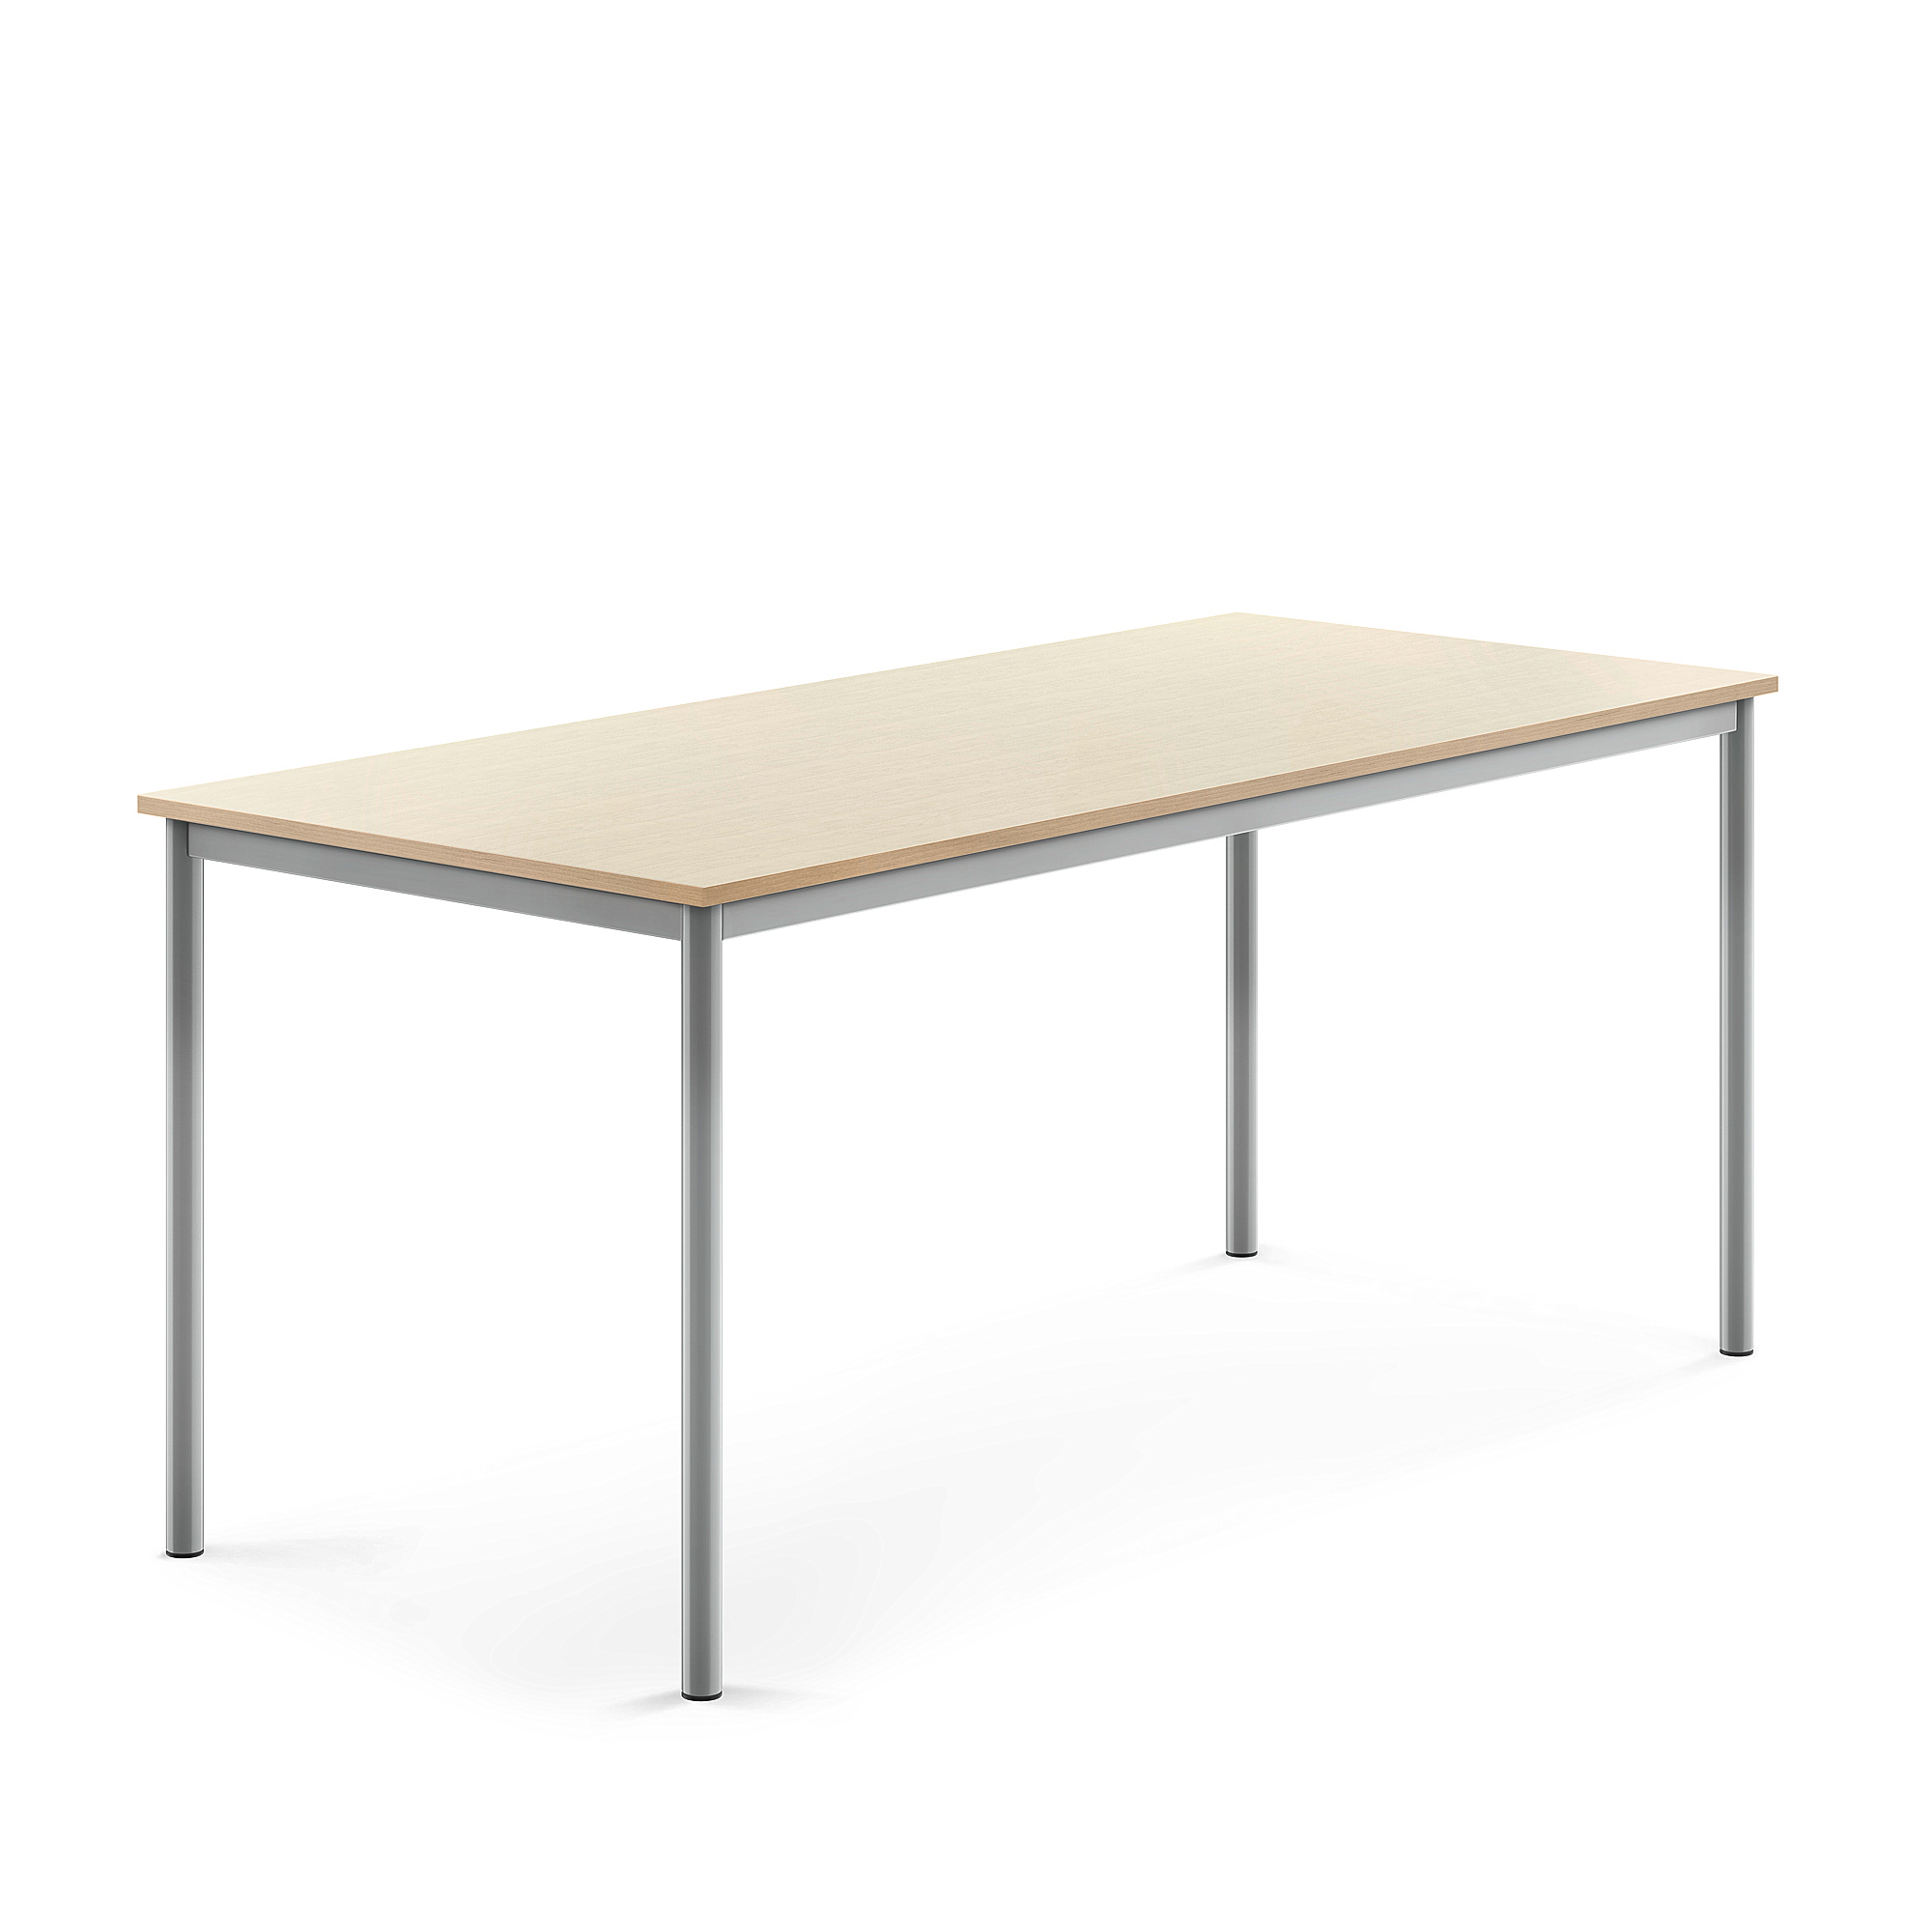 Stůl SONITUS, 1800x800x760 mm, stříbrné nohy, HPL deska tlumící hluk, bříza